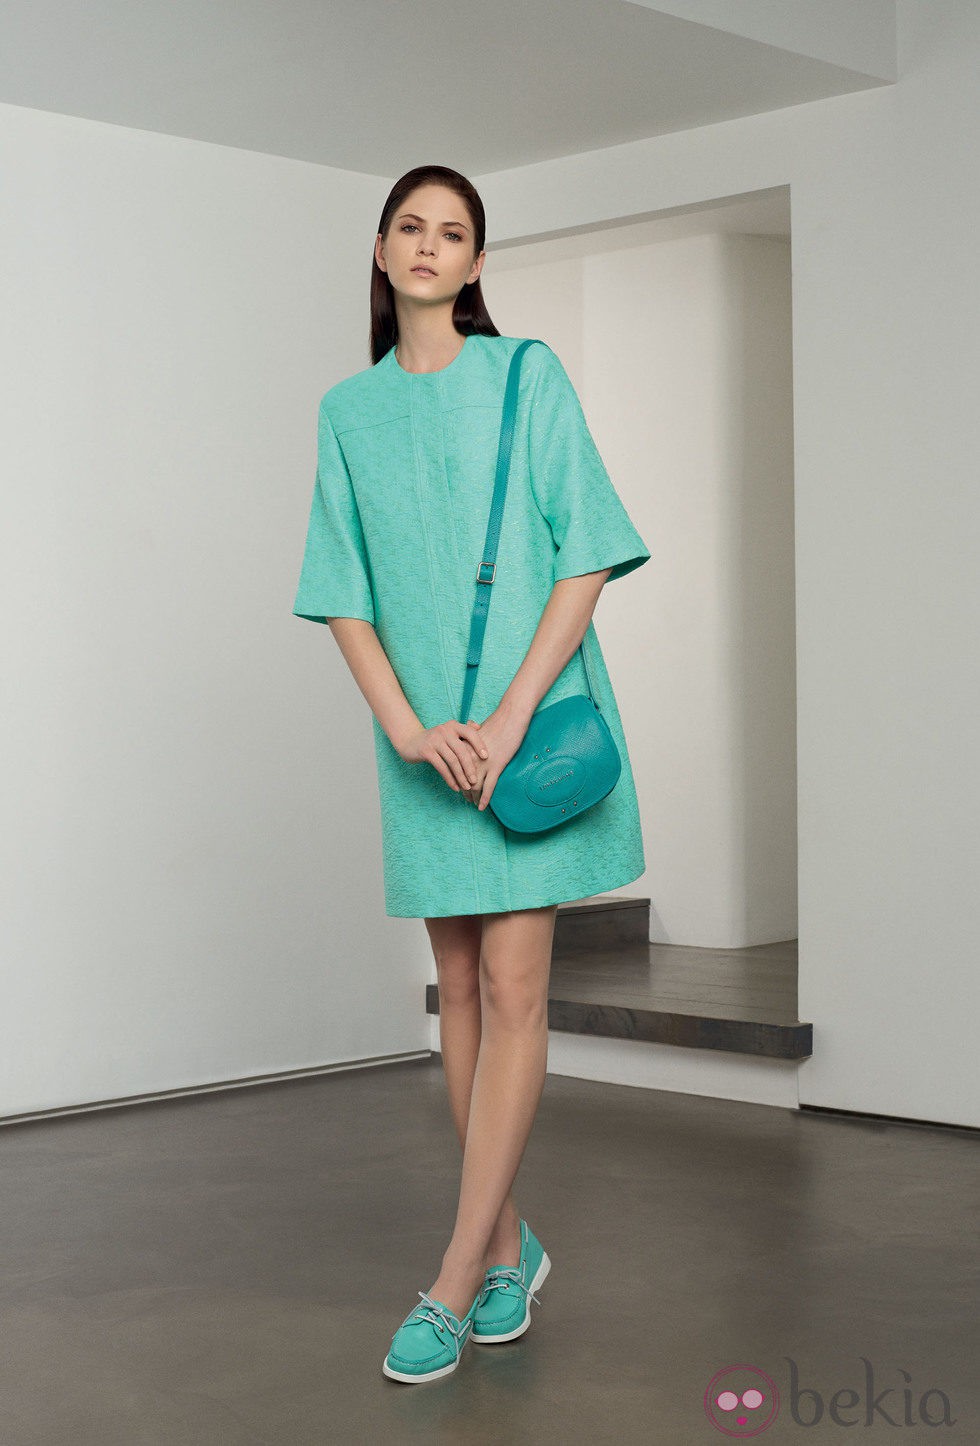 Abrigo de piel en tono turquesa de la colección 'Ready to wear' 2014 de Longchamp